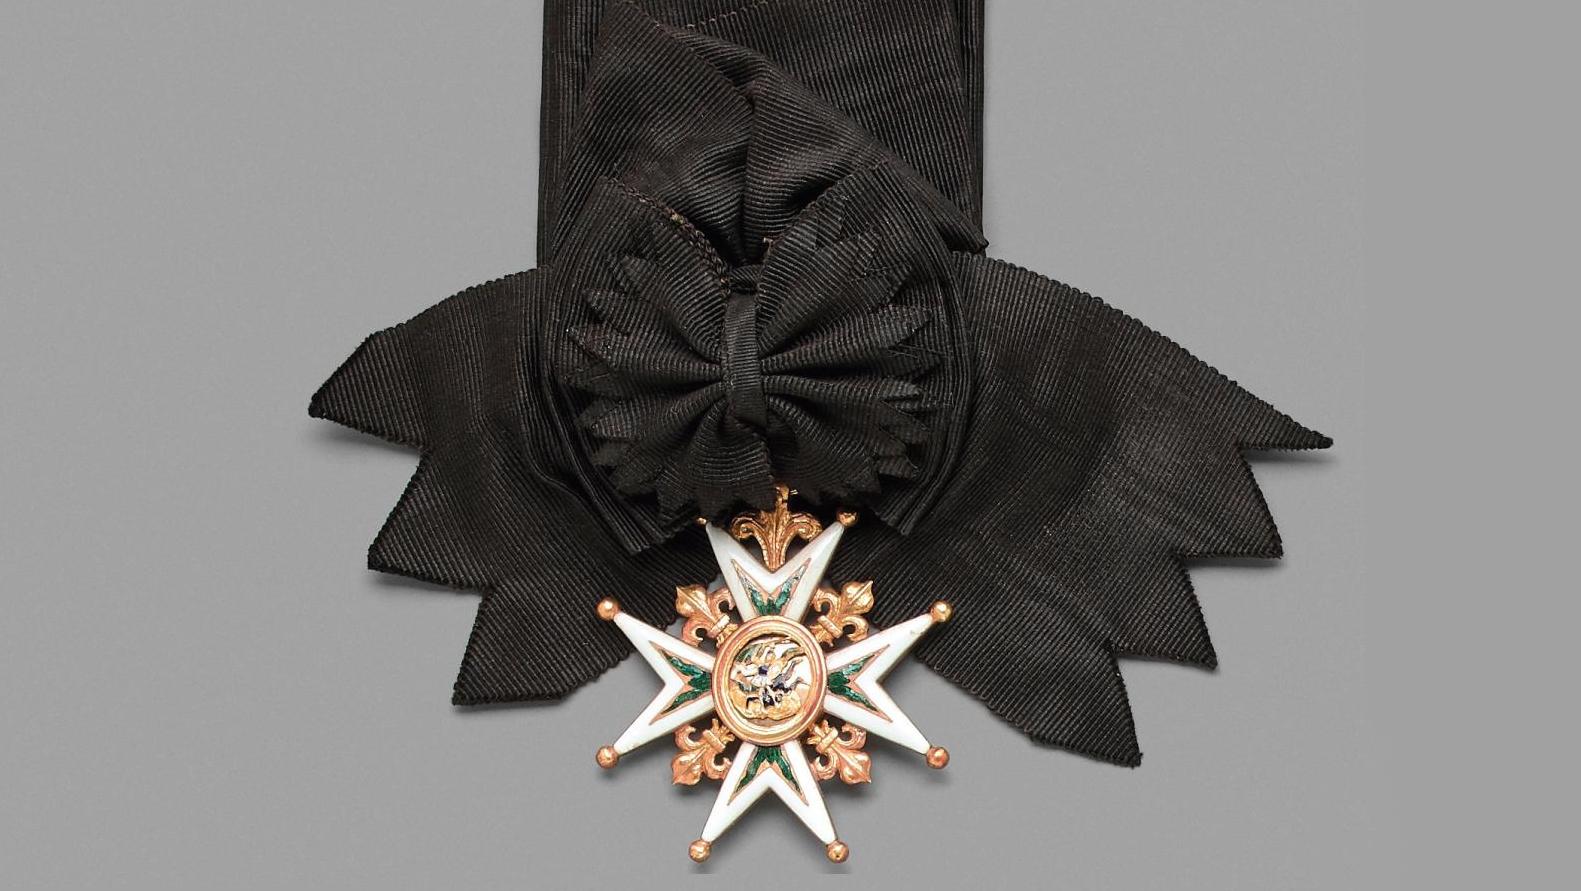 France, vers 1821. Ordre de Saint-Michel, fondé en 1469, croix de chevalier en or... Un scientifique, chevalier de l’ordre de Saint-Michel